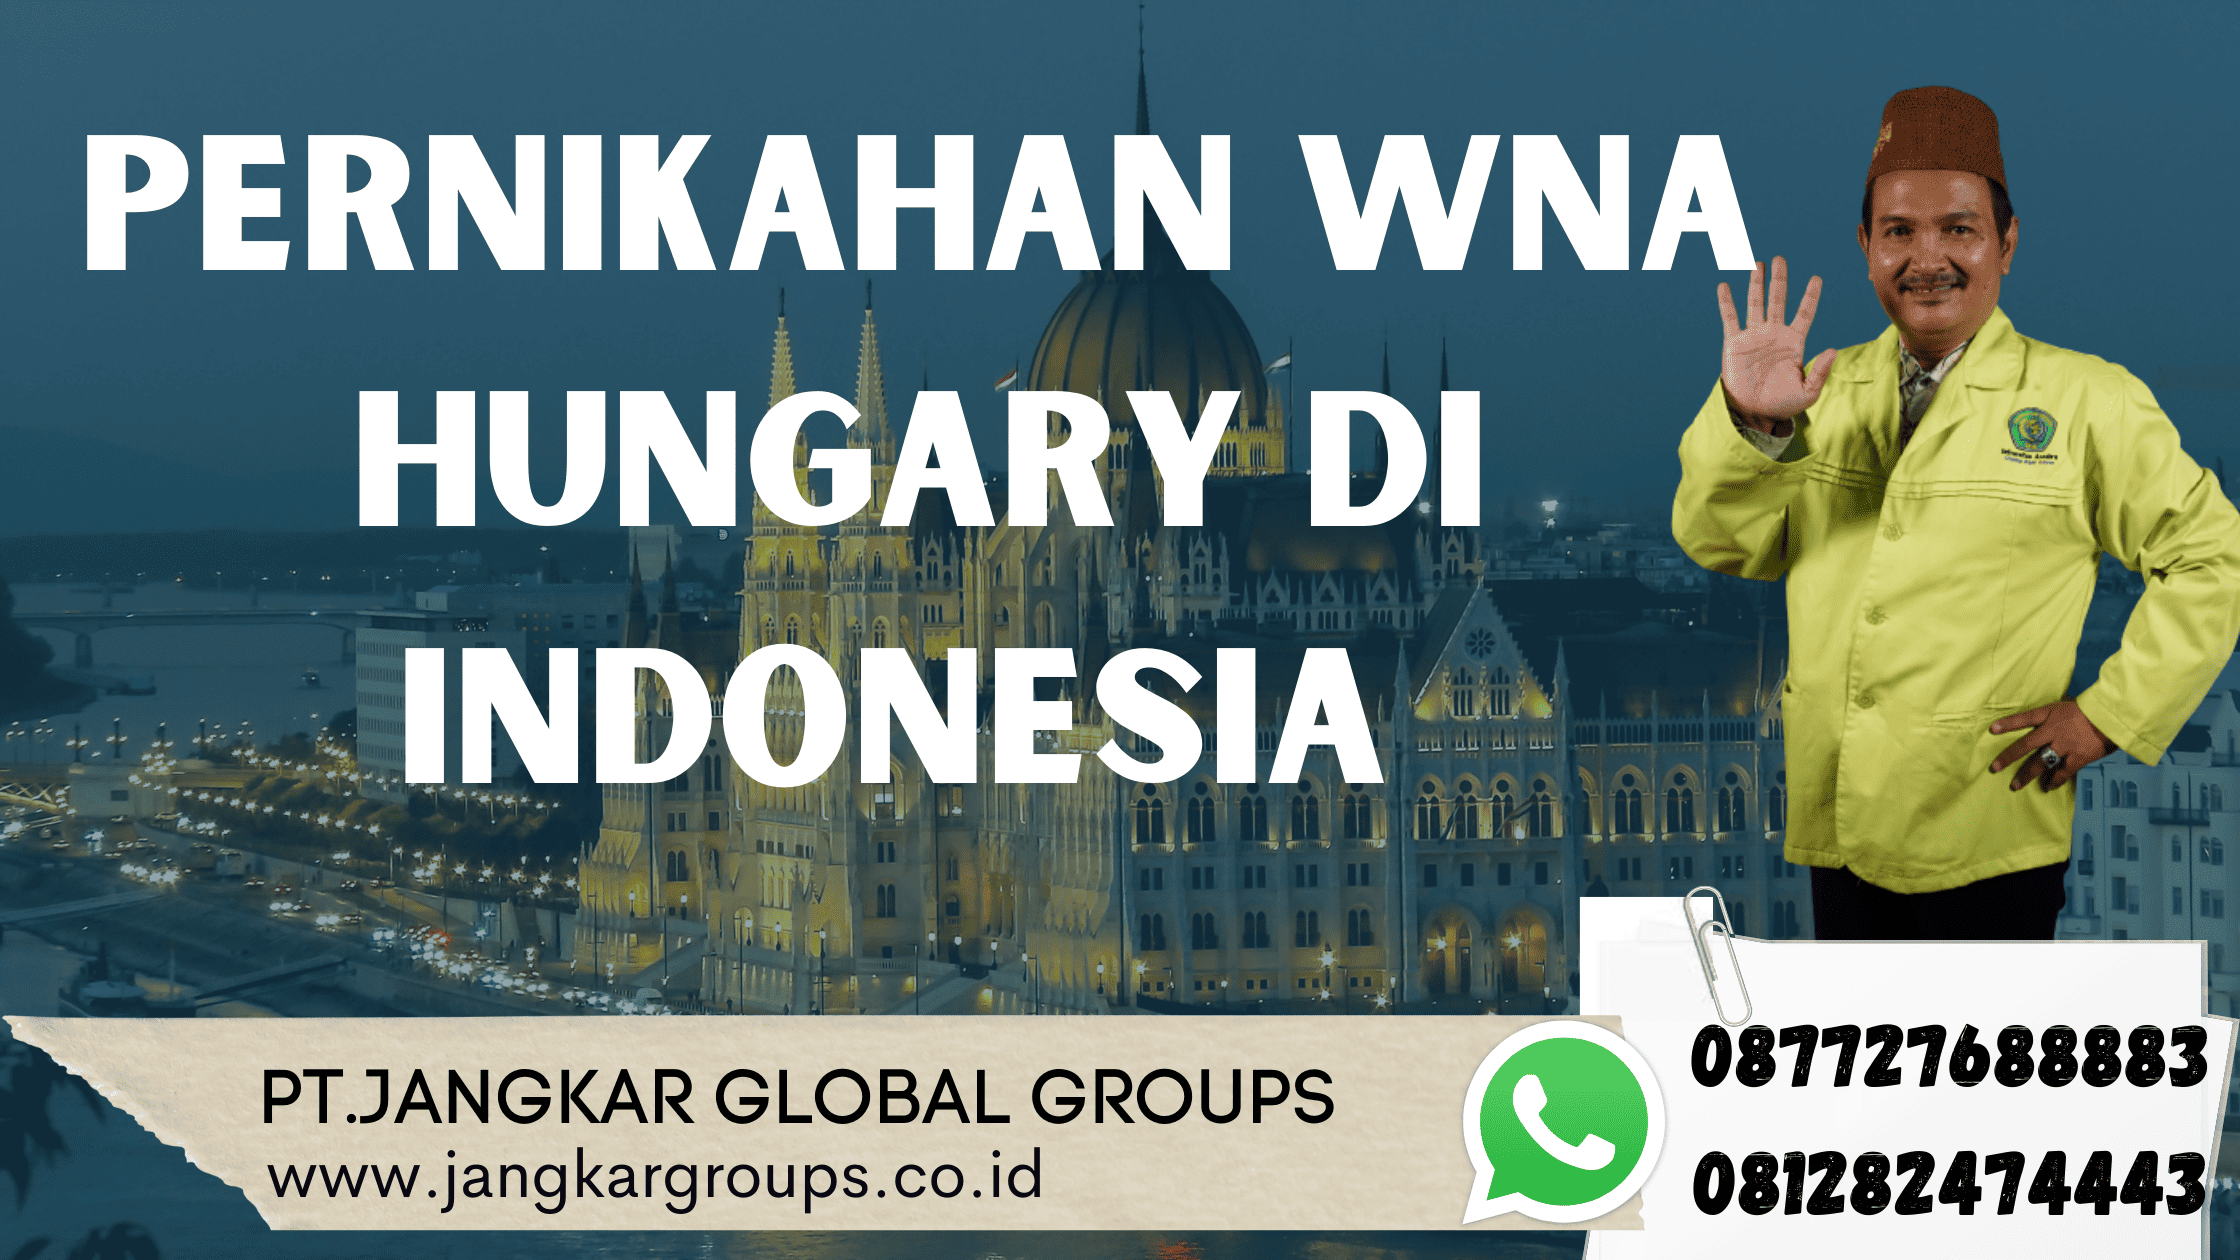 Pernikahan WNA Hungary di Indonesia